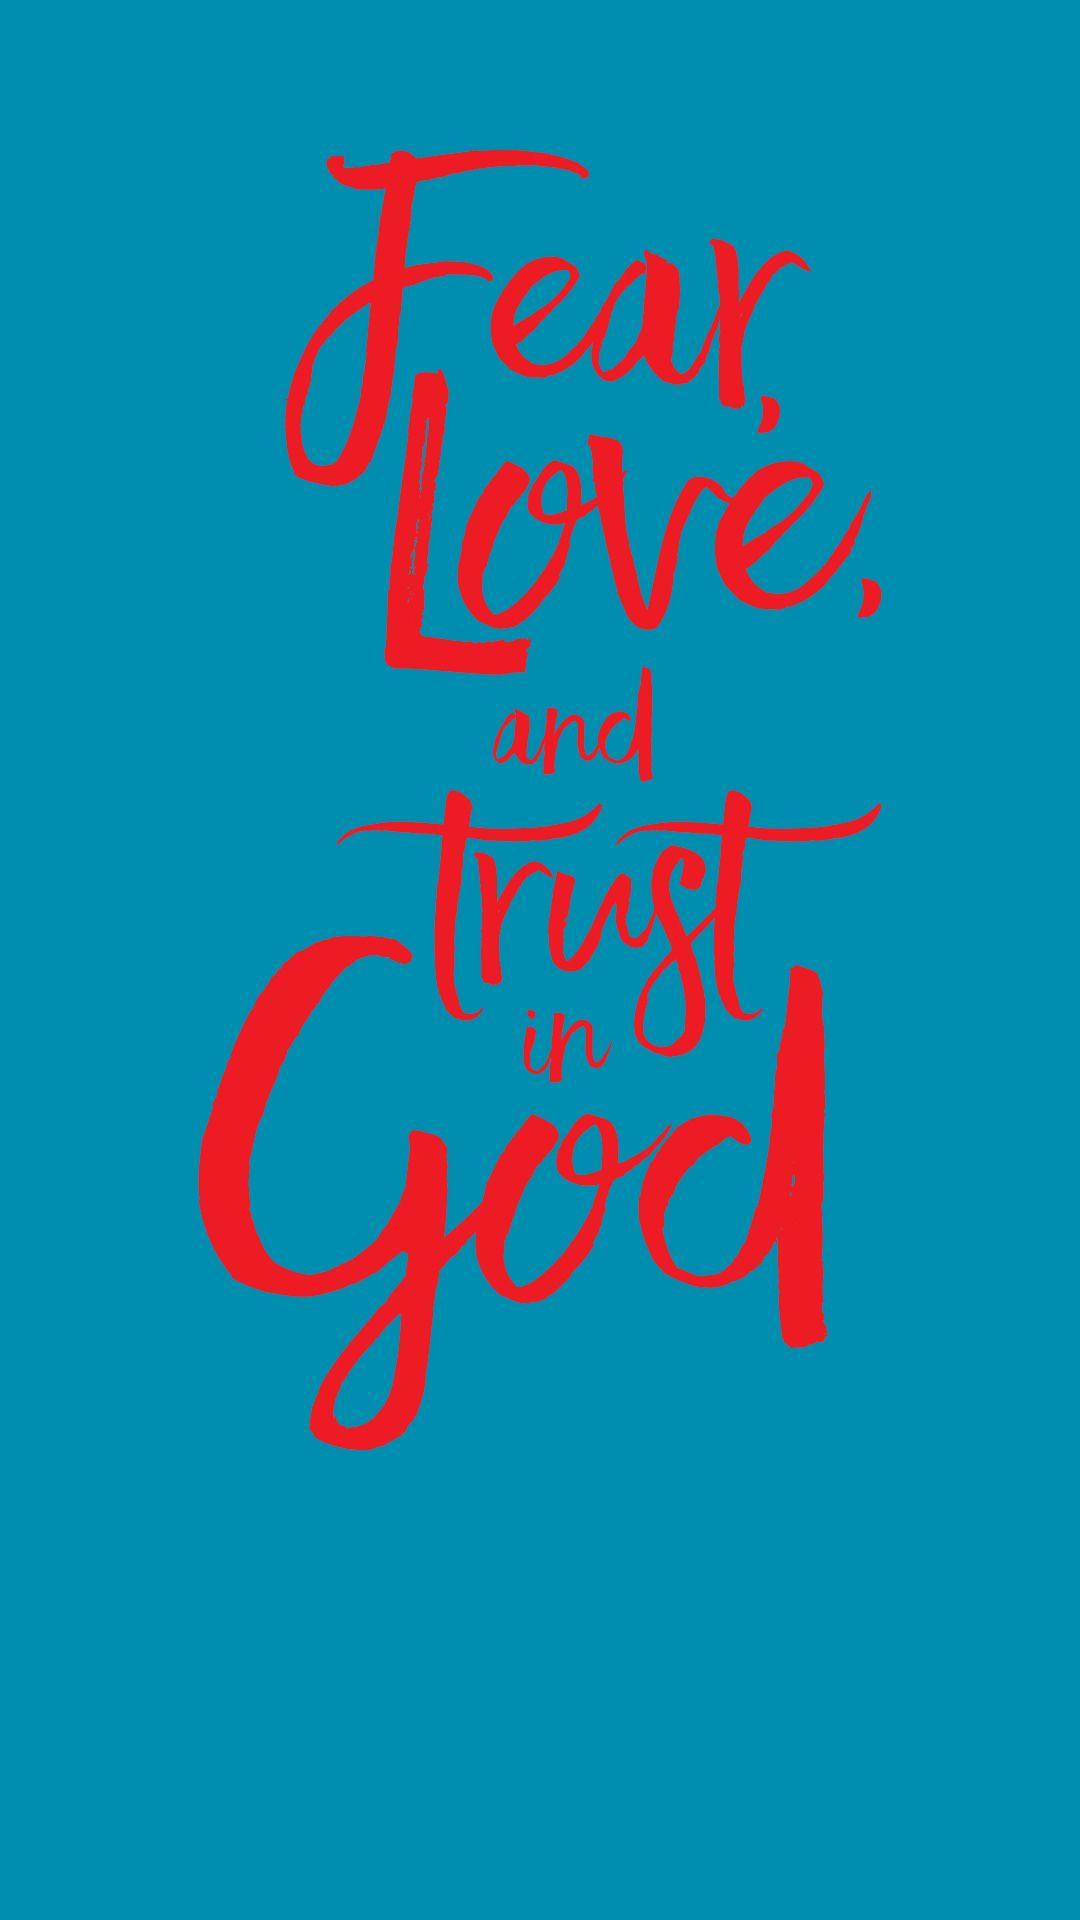 Printable Fear of God Logo - Free Printable Verses. Christian Art. Faith, Trust god, Bible